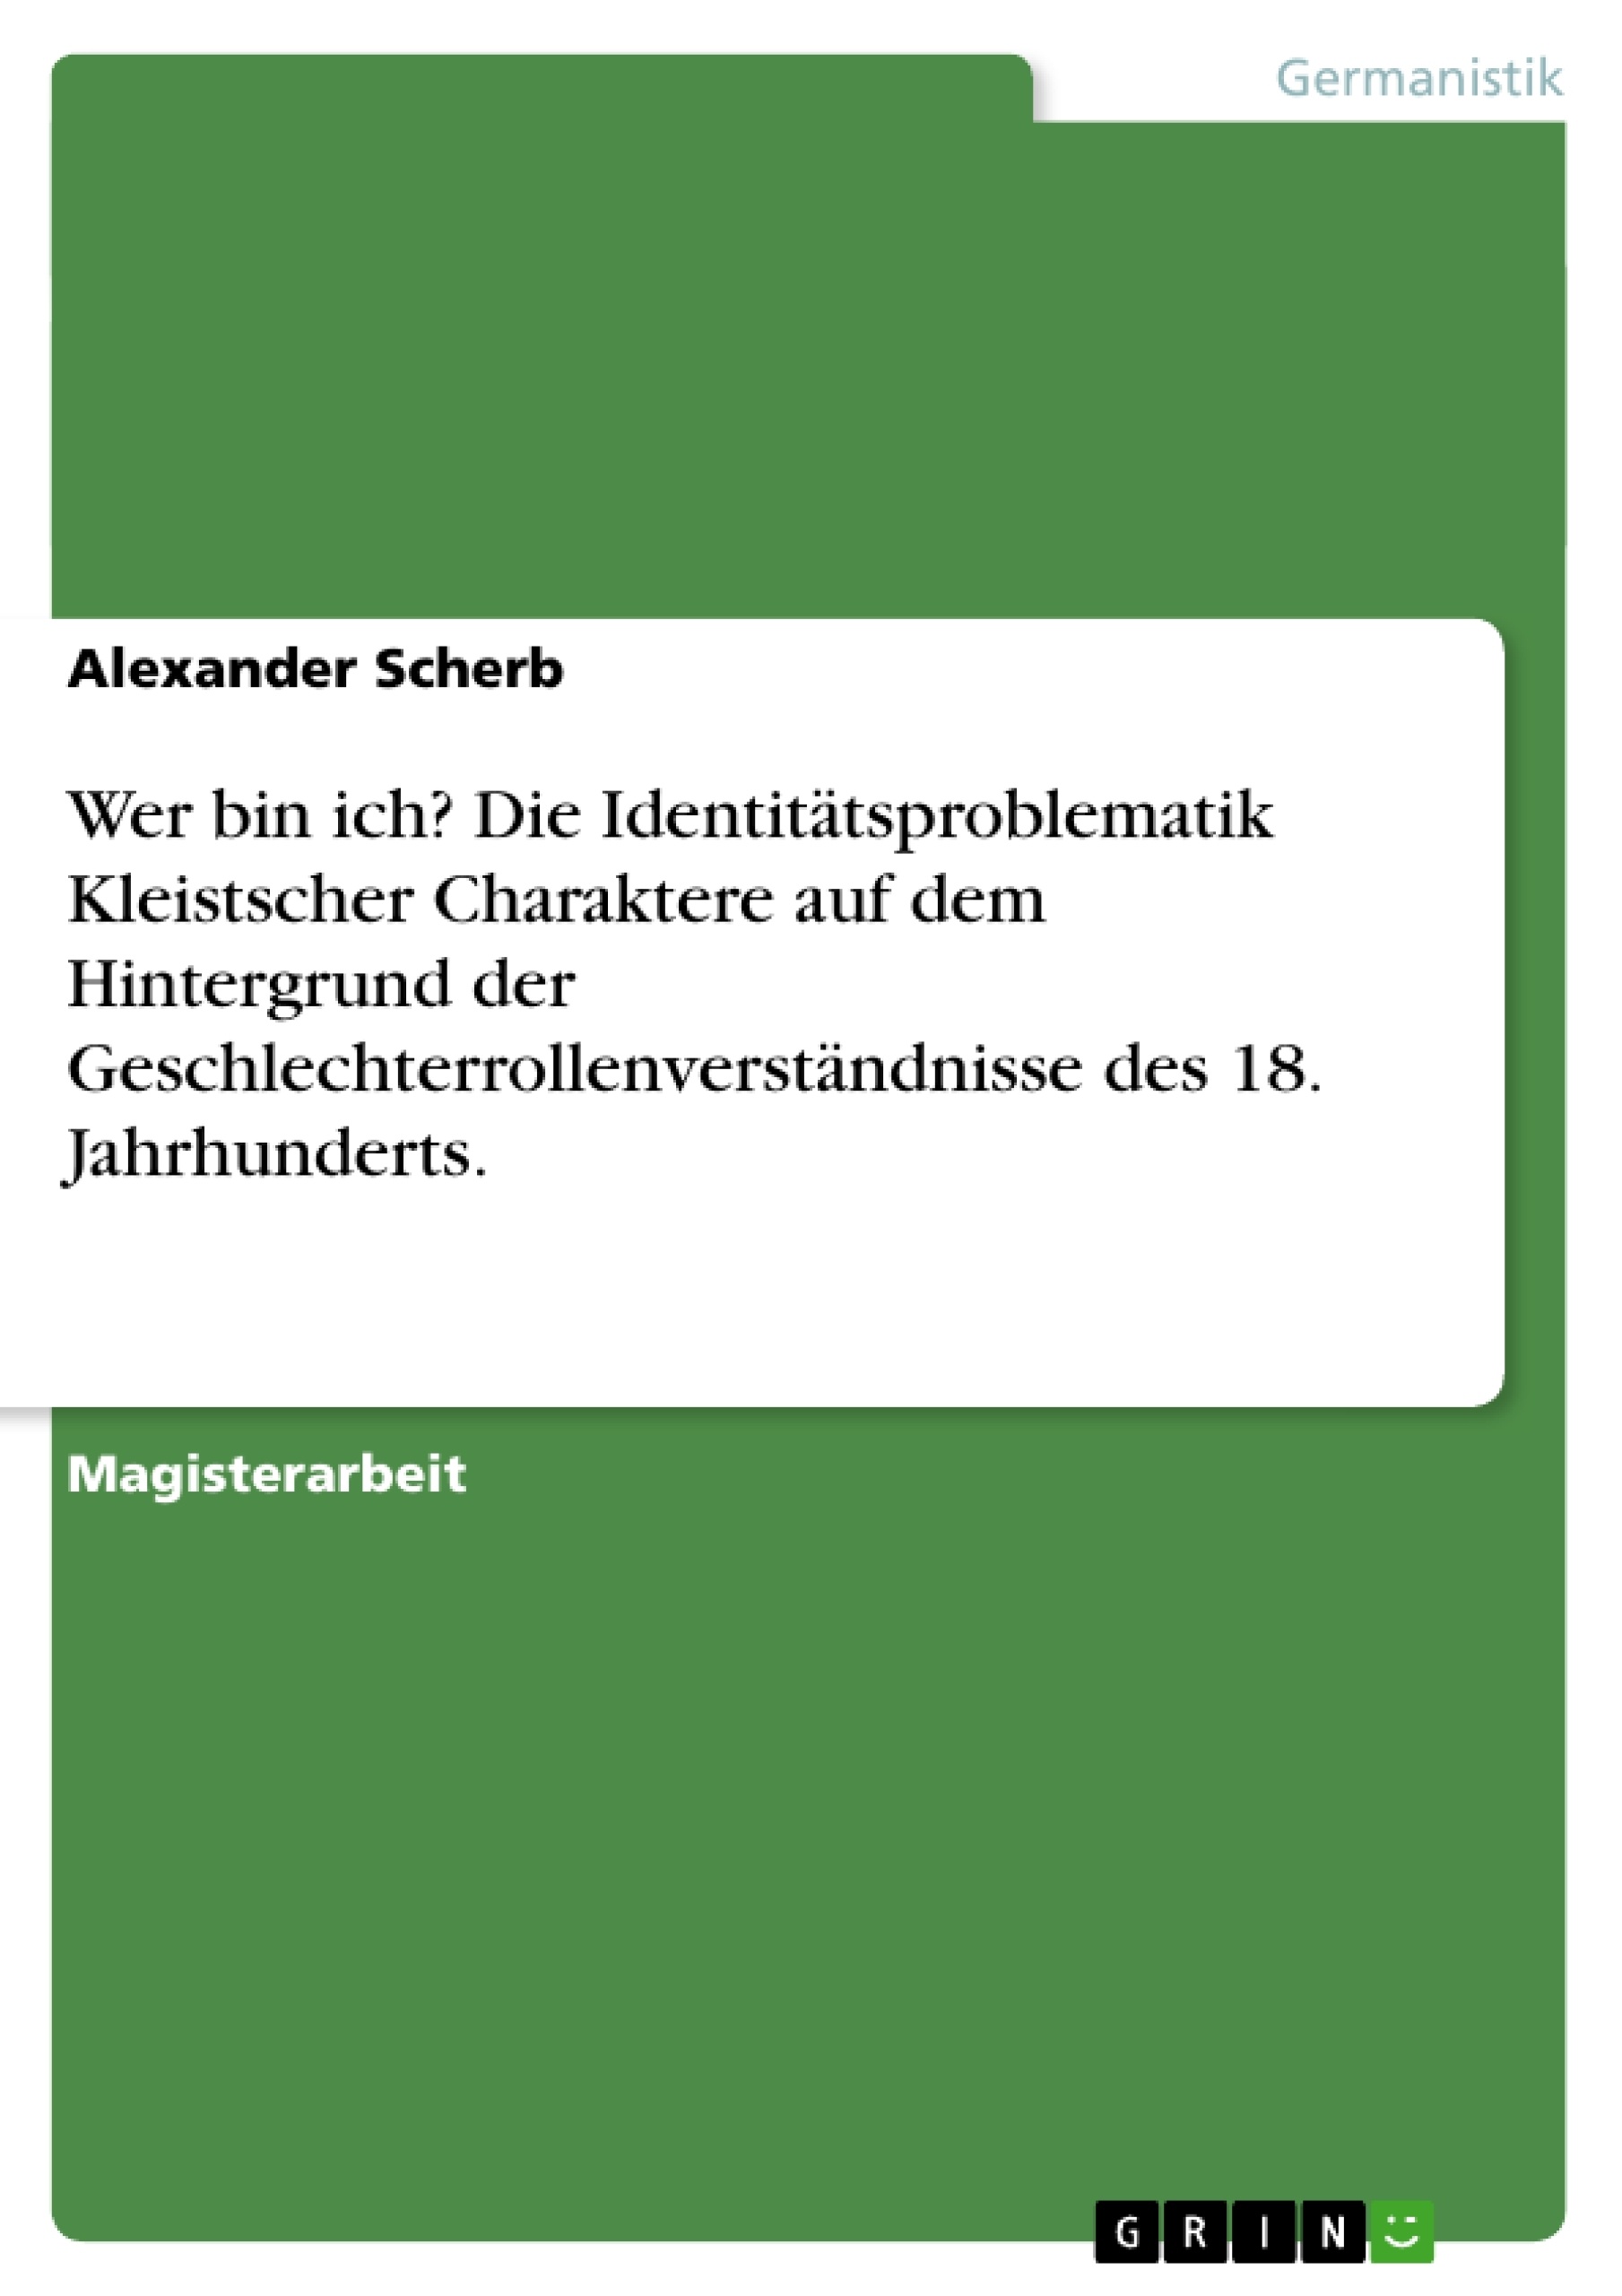 Title: Wer bin ich? Die Identitätsproblematik Kleistscher Charaktere auf dem Hintergrund der Geschlechterrollenverständnisse des 18. Jahrhunderts.